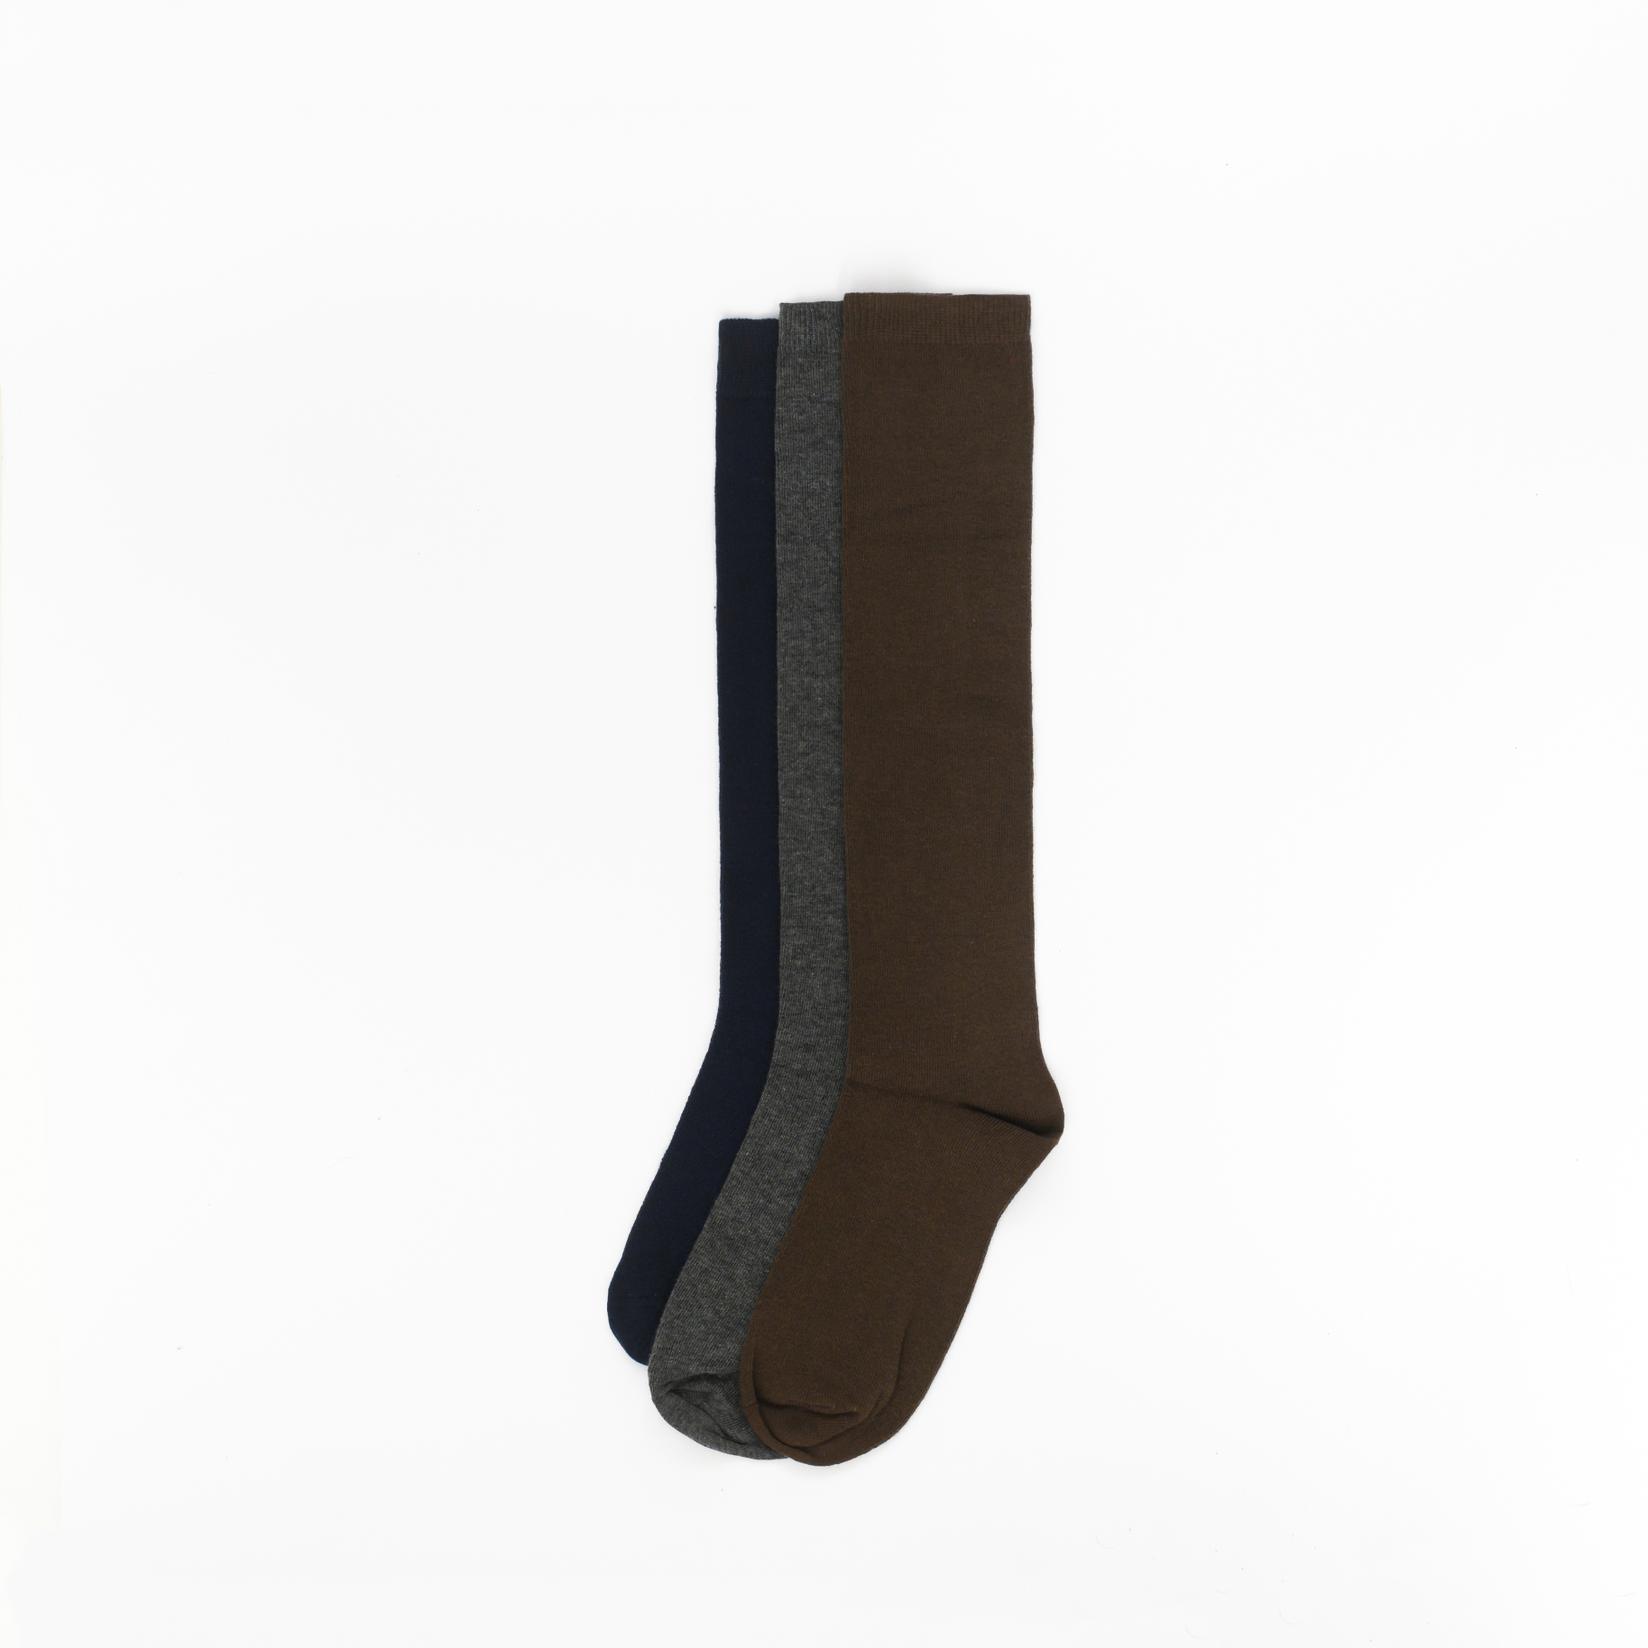 Slike BOX SOCKS Čarape za dečake 3/1 sive, braon, teget